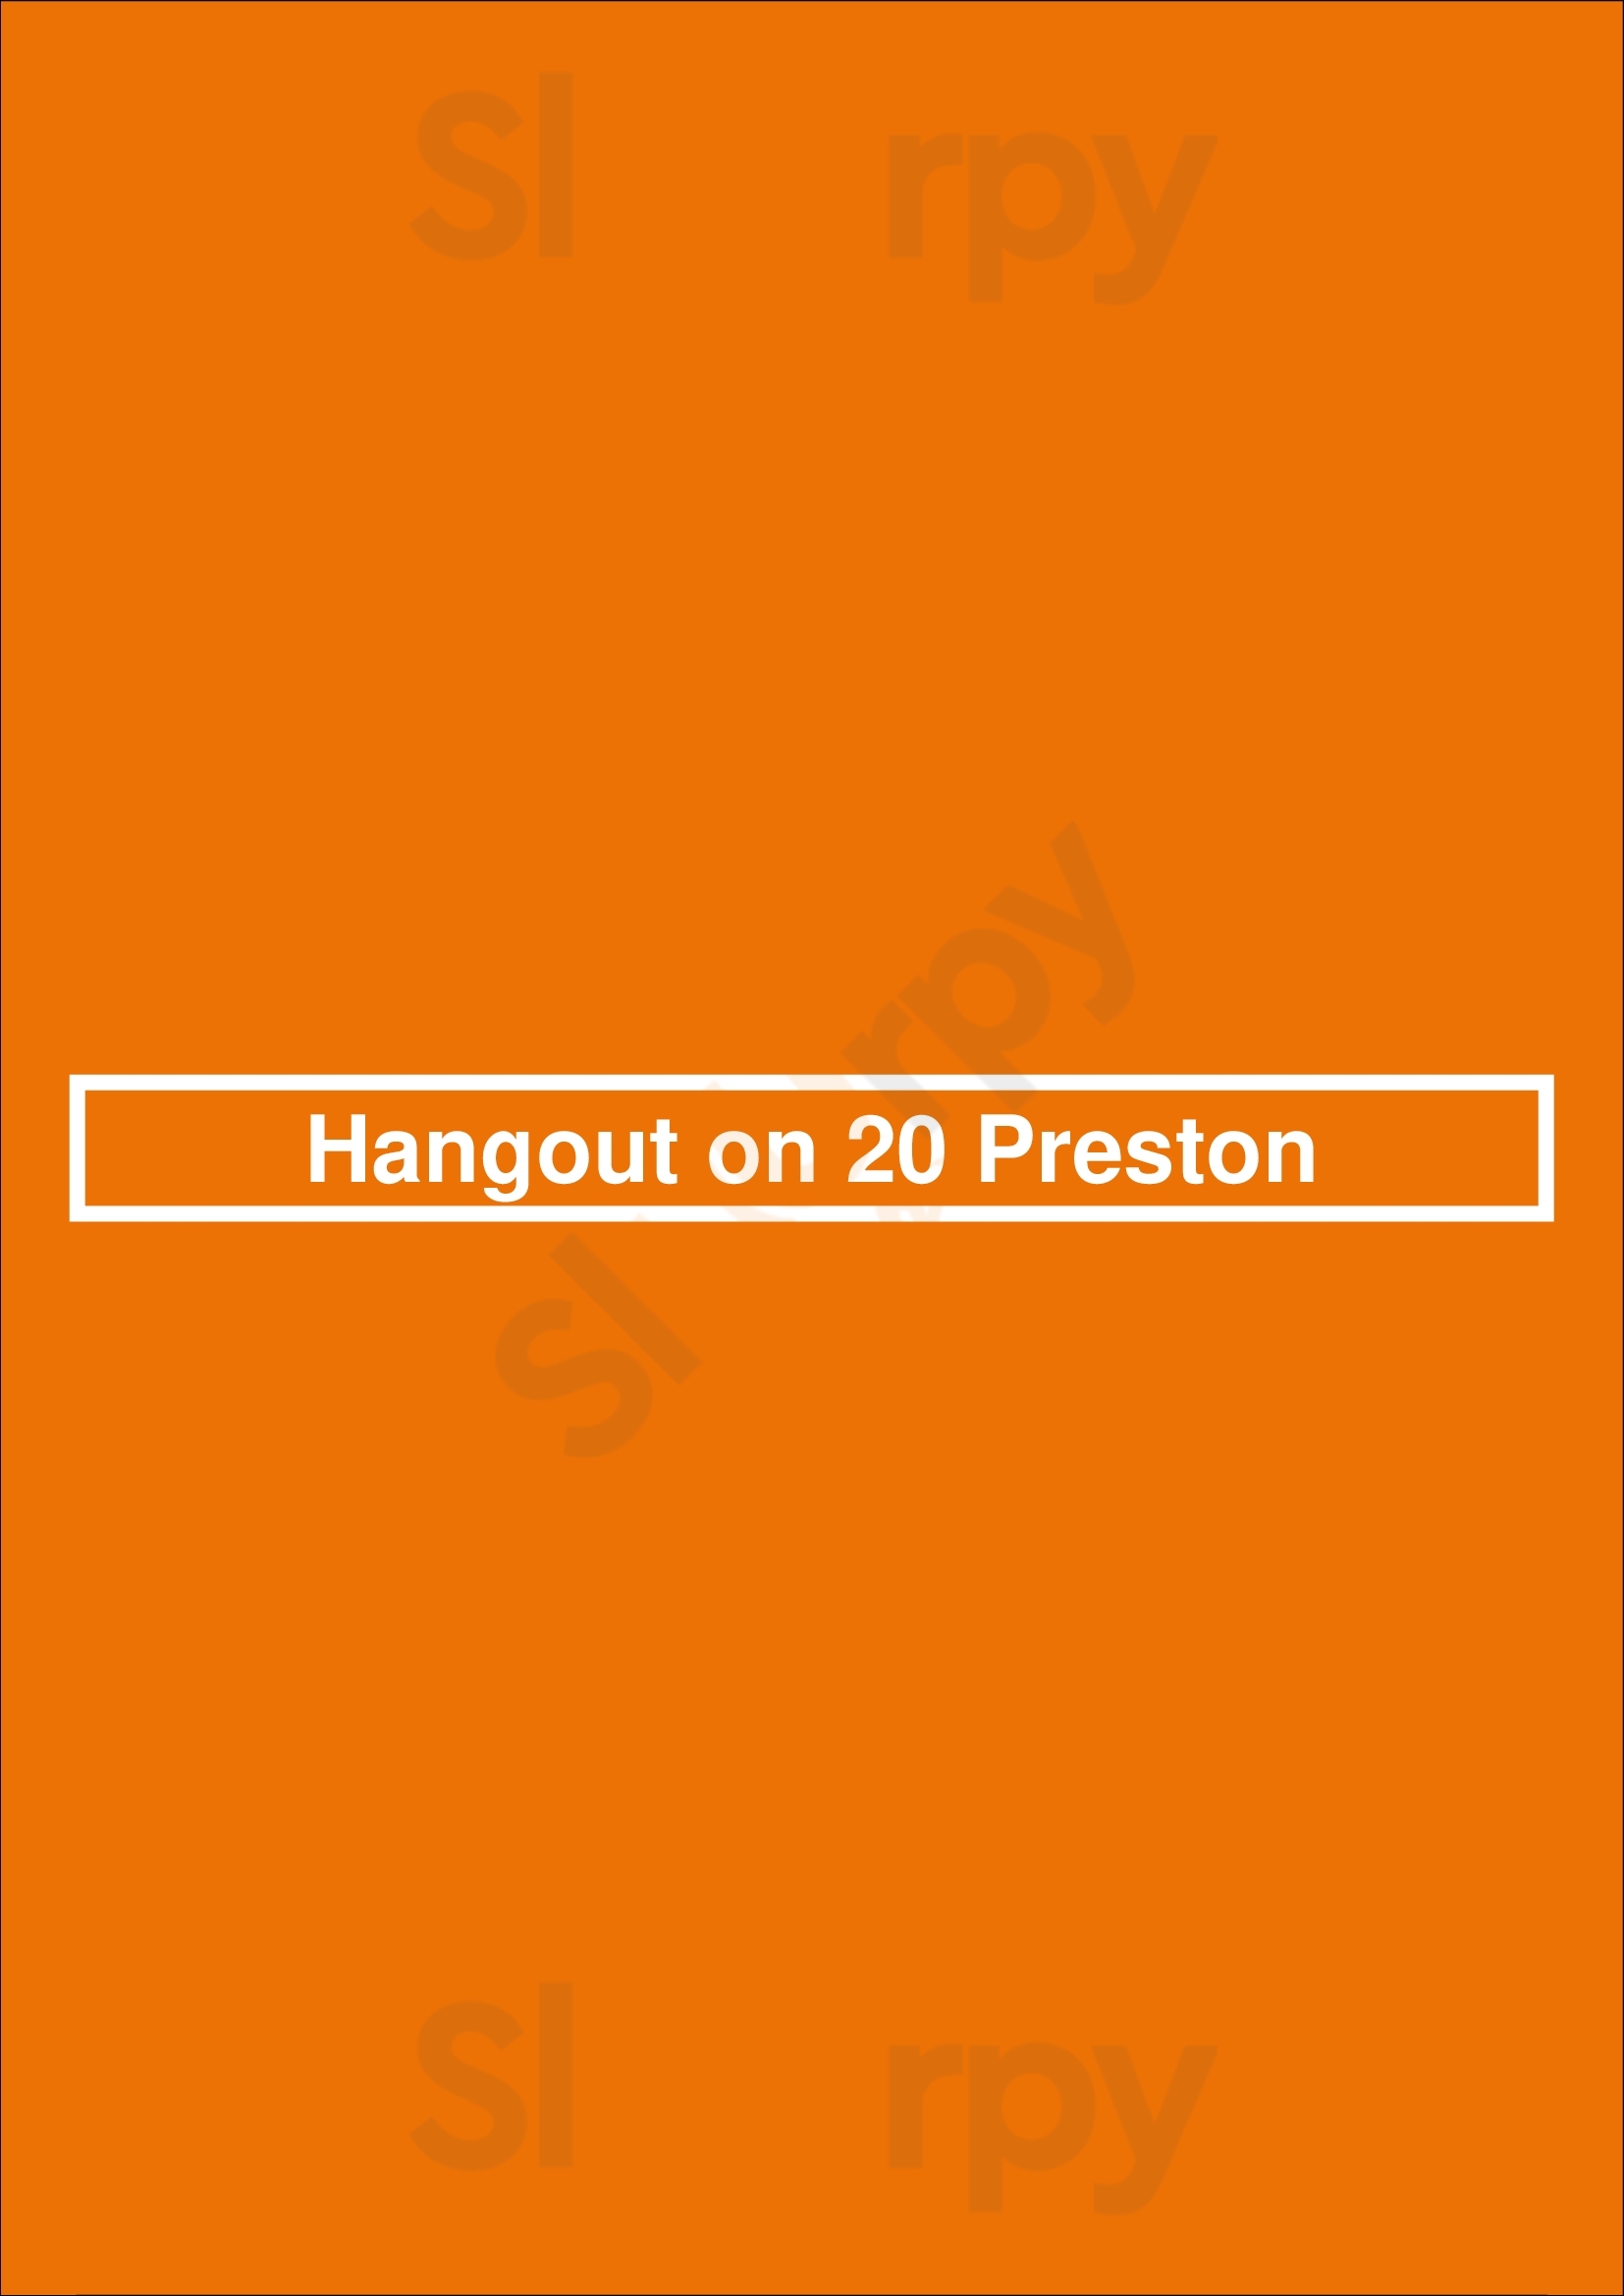 Hangout On 20 Preston Perth Menu - 1